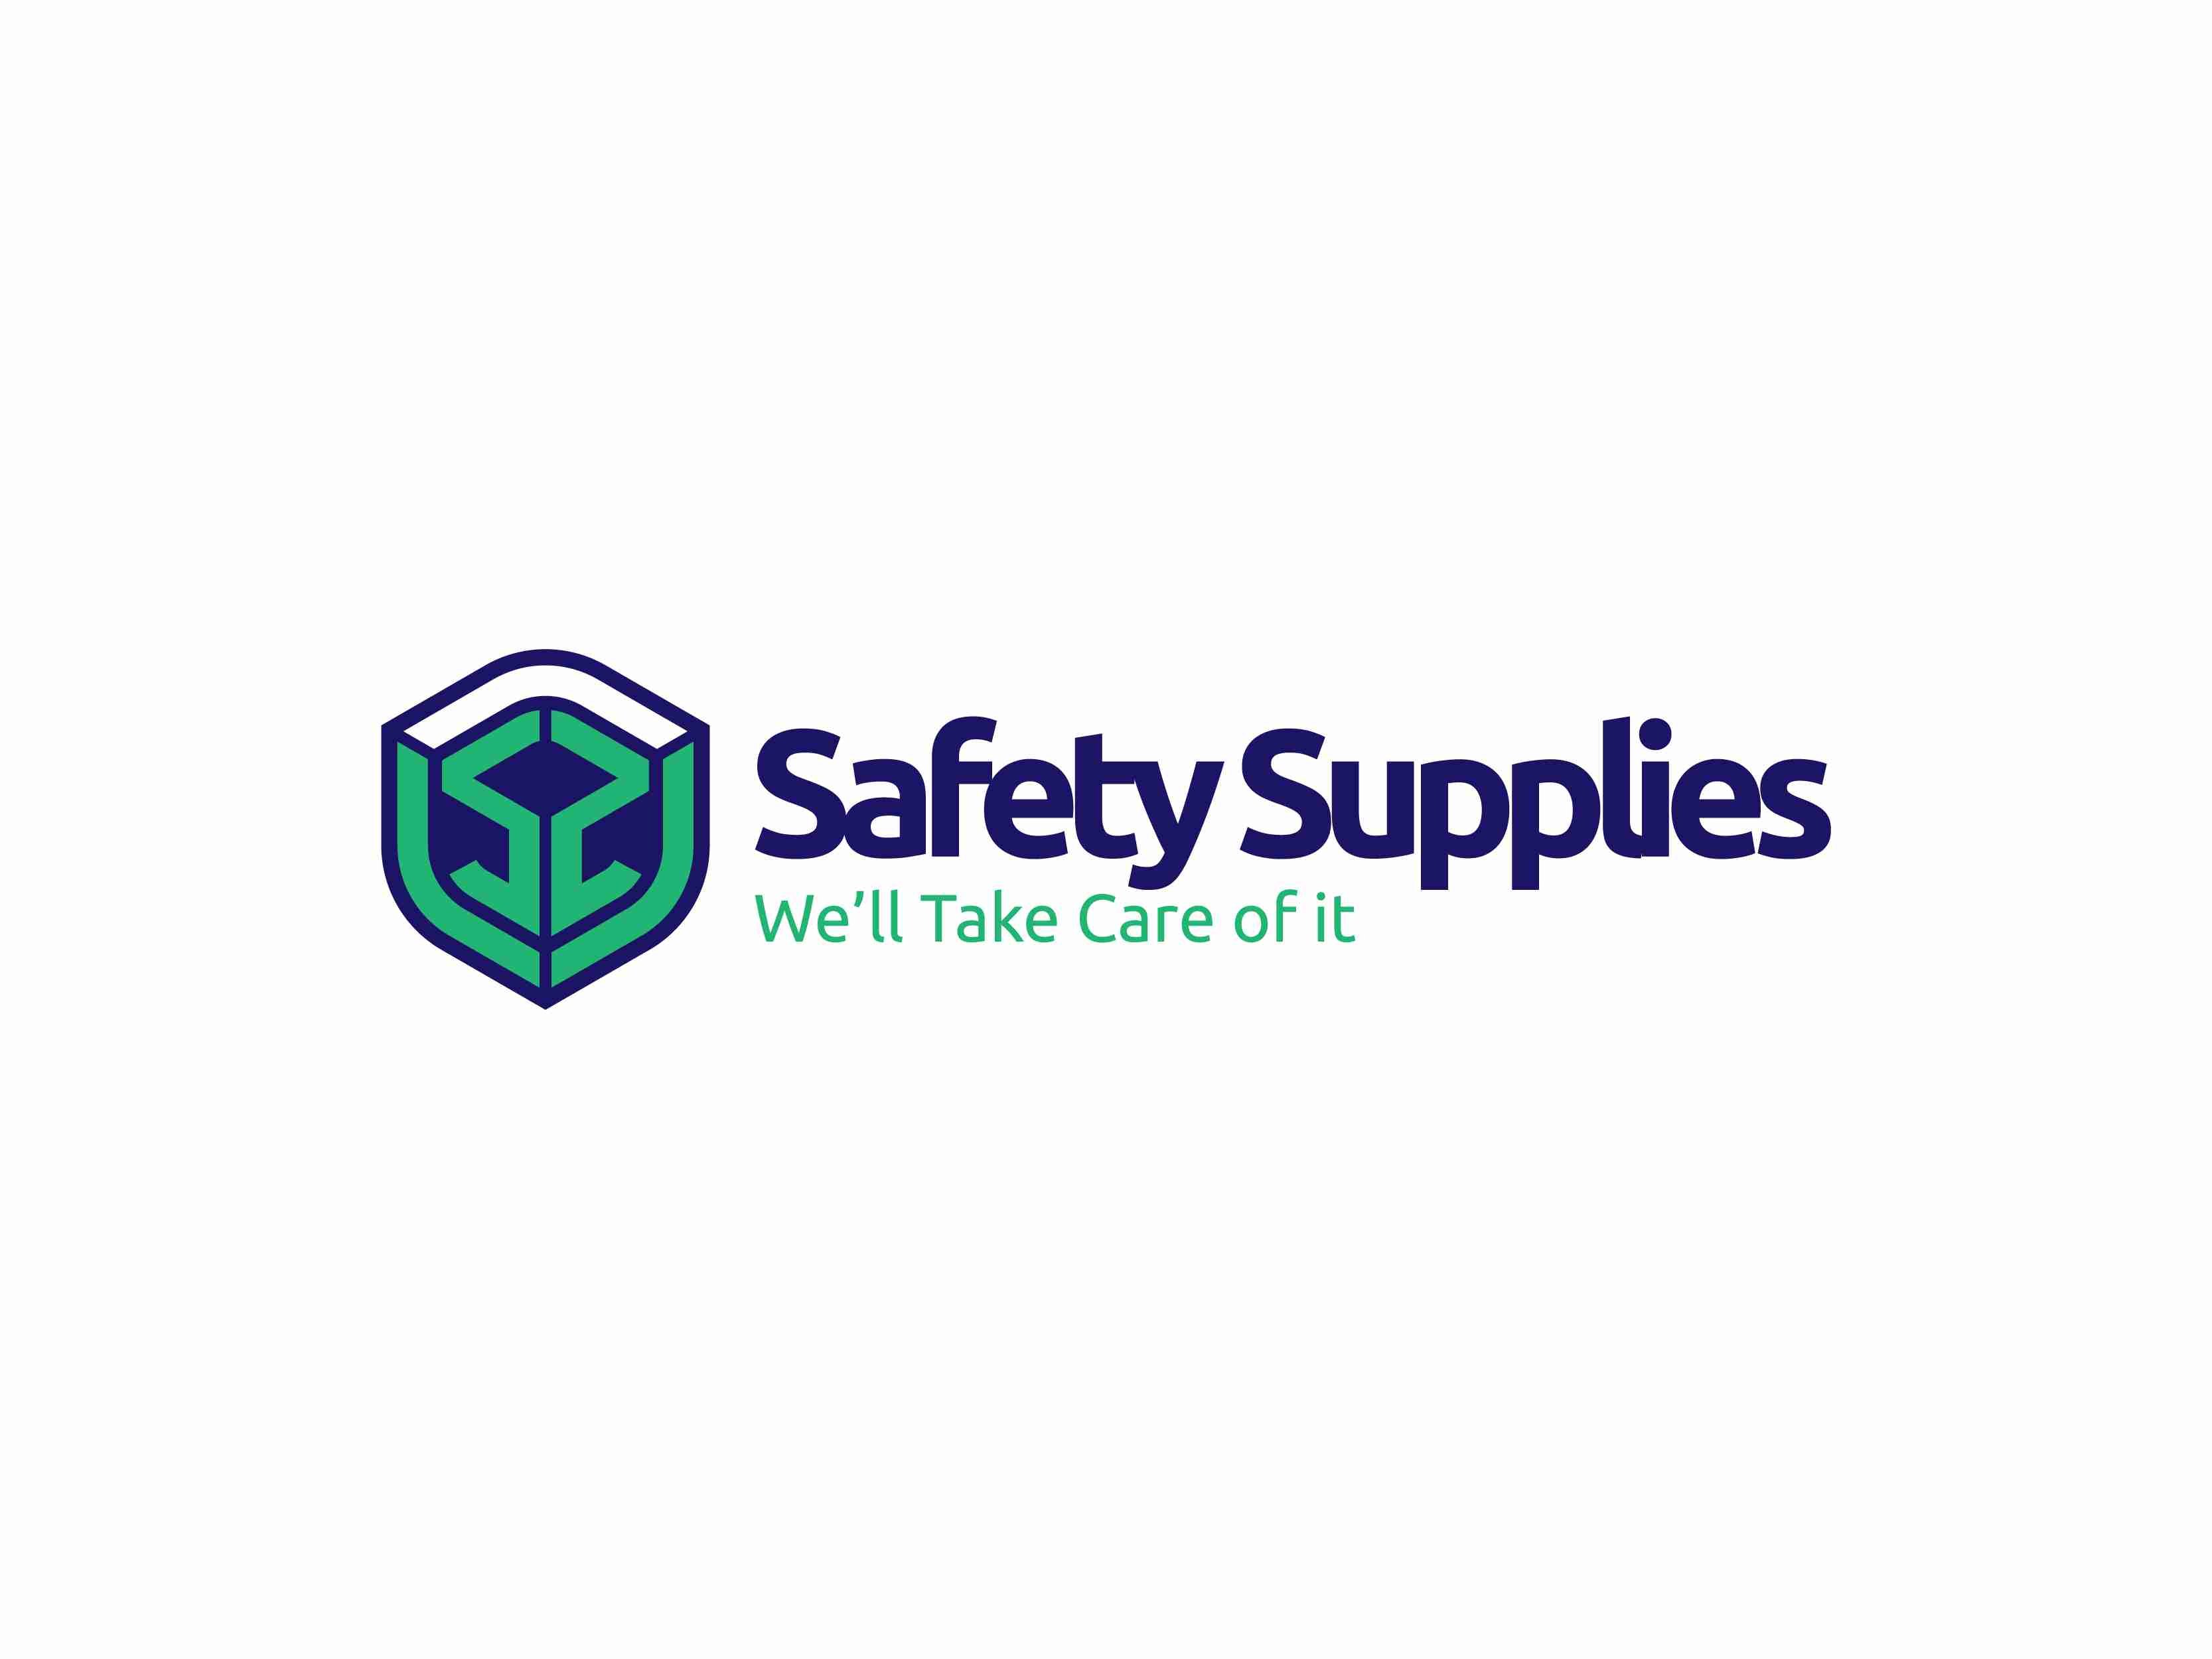 Safety Supplies NZ